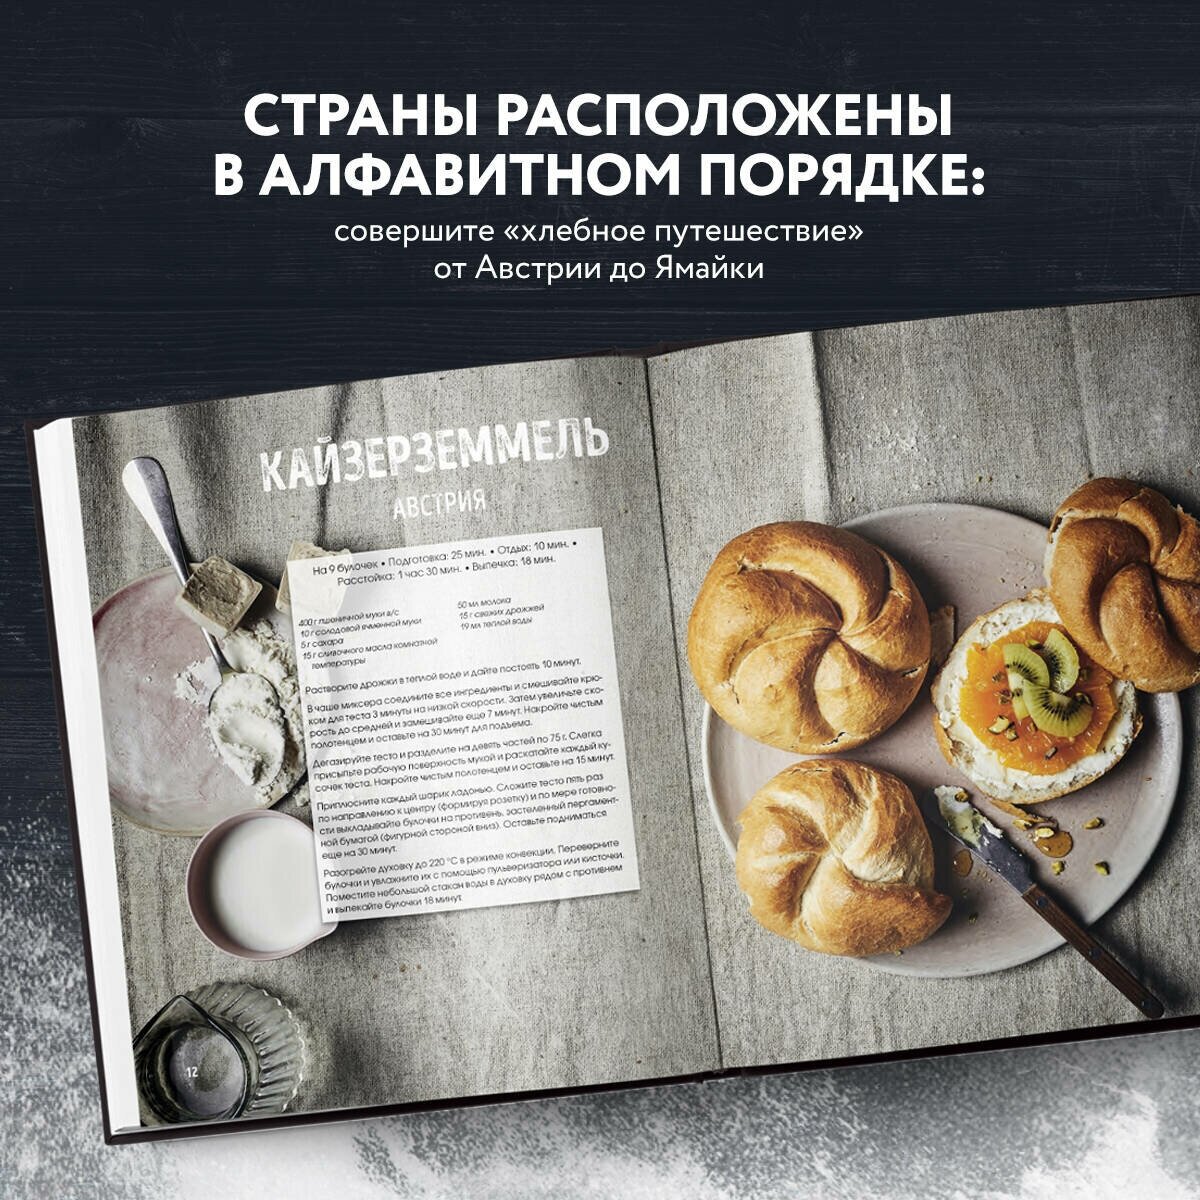 Мир хлеба. 100 лучших рецептов домашнего хлеба со всего мира - фото №2